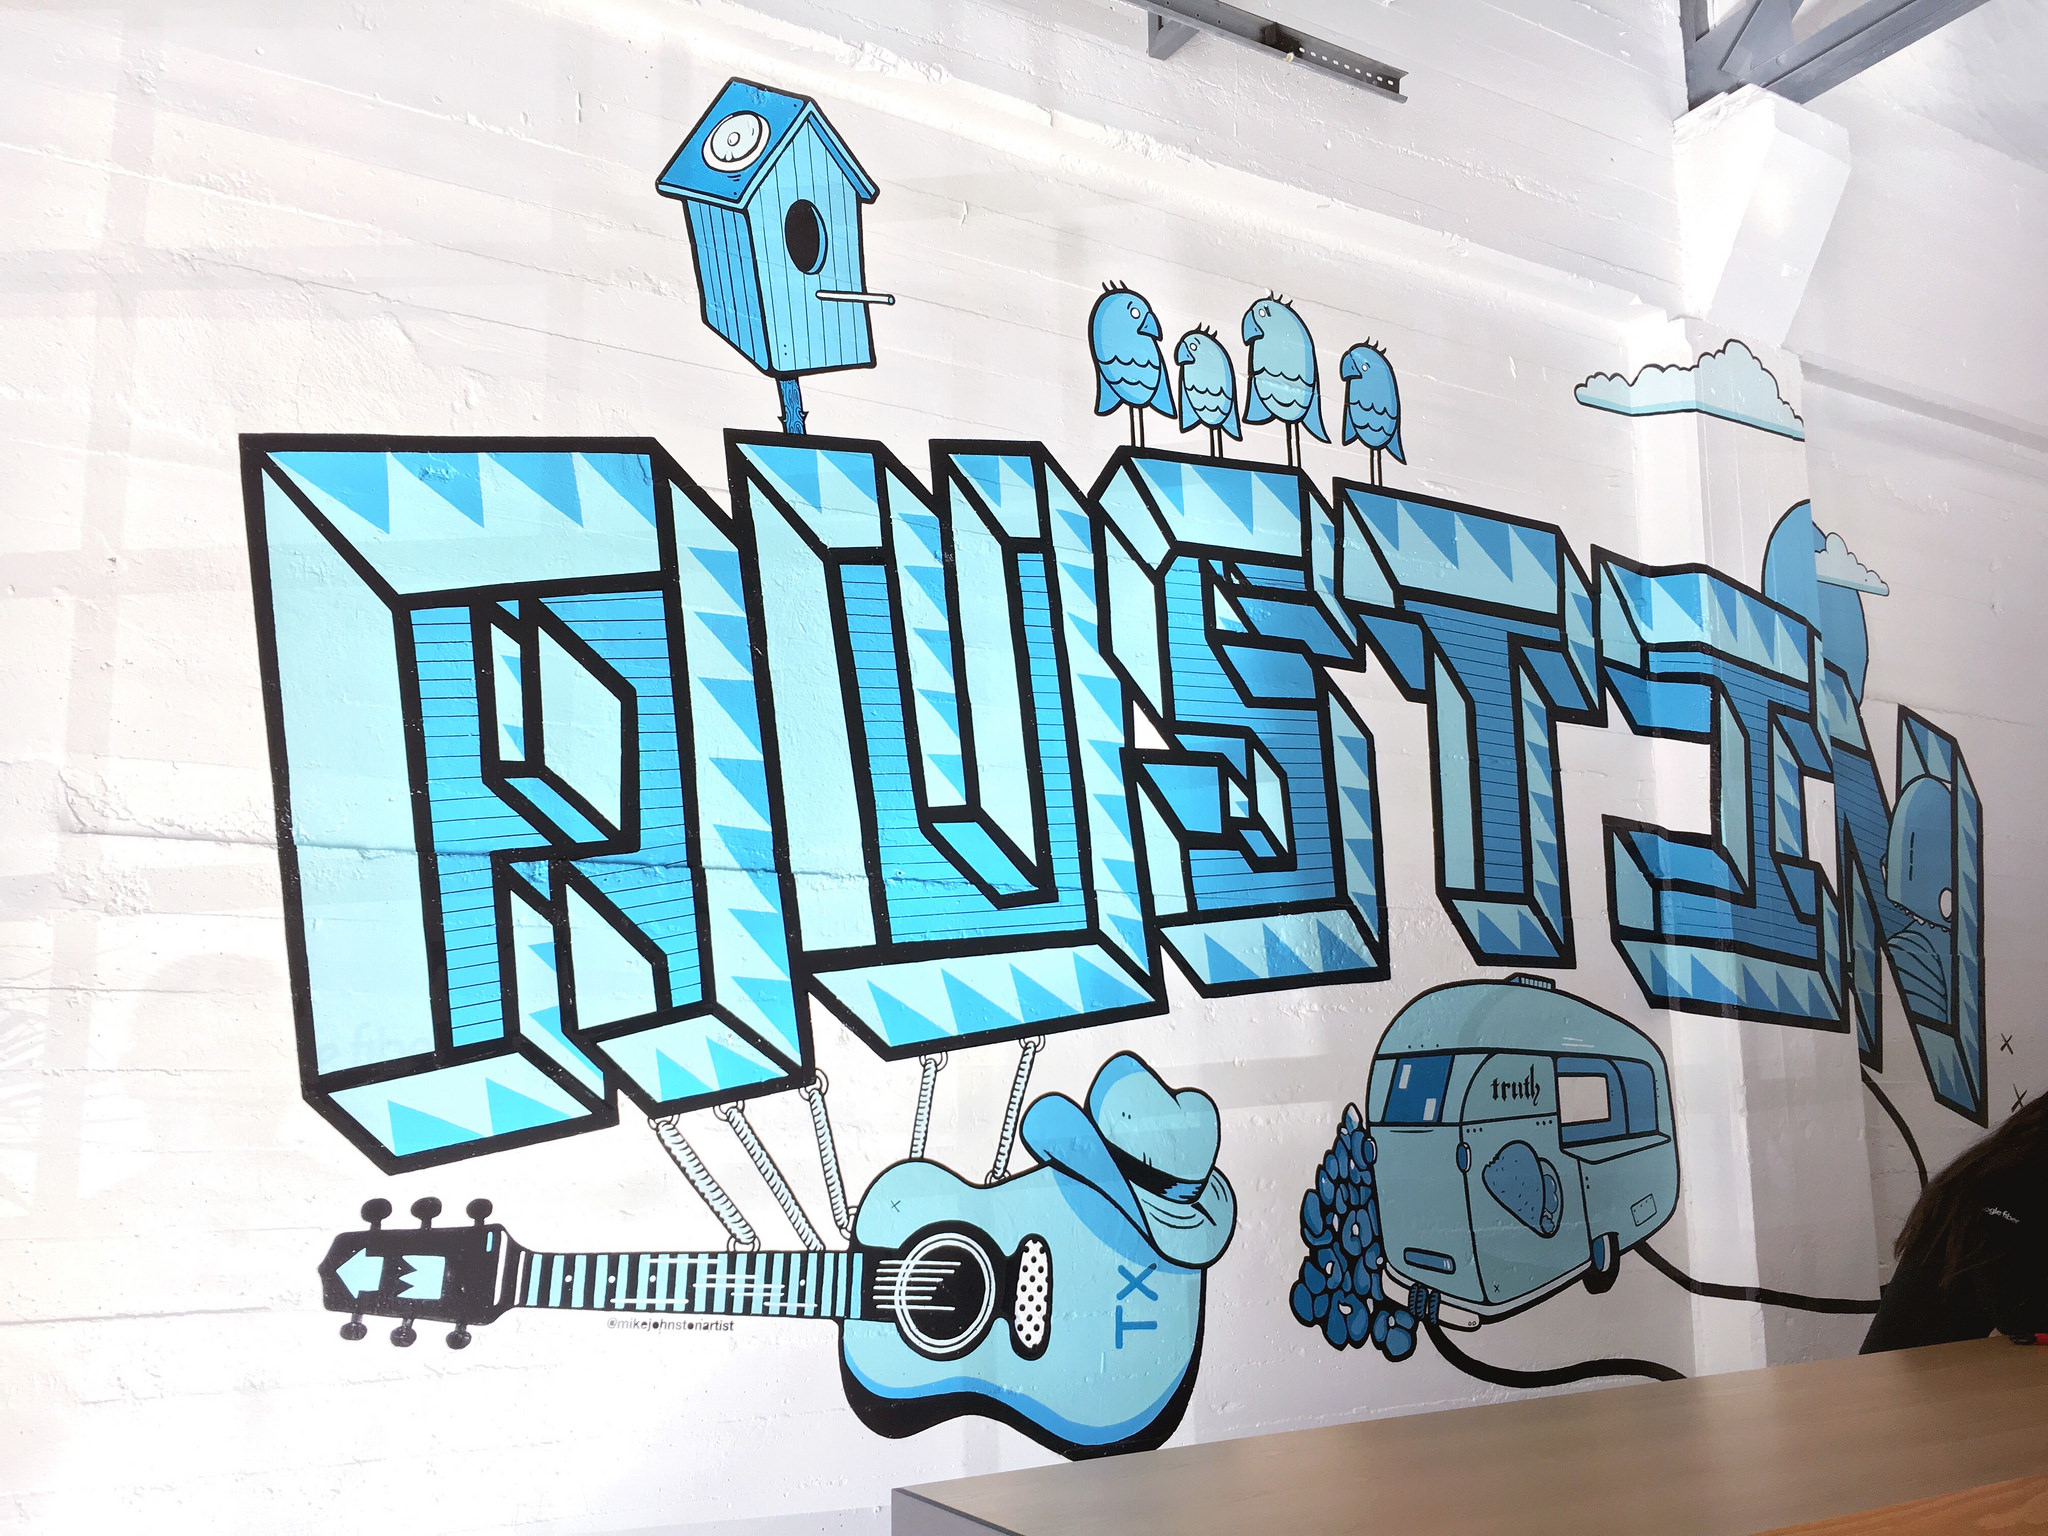  Mural at Google Fiber HQ 